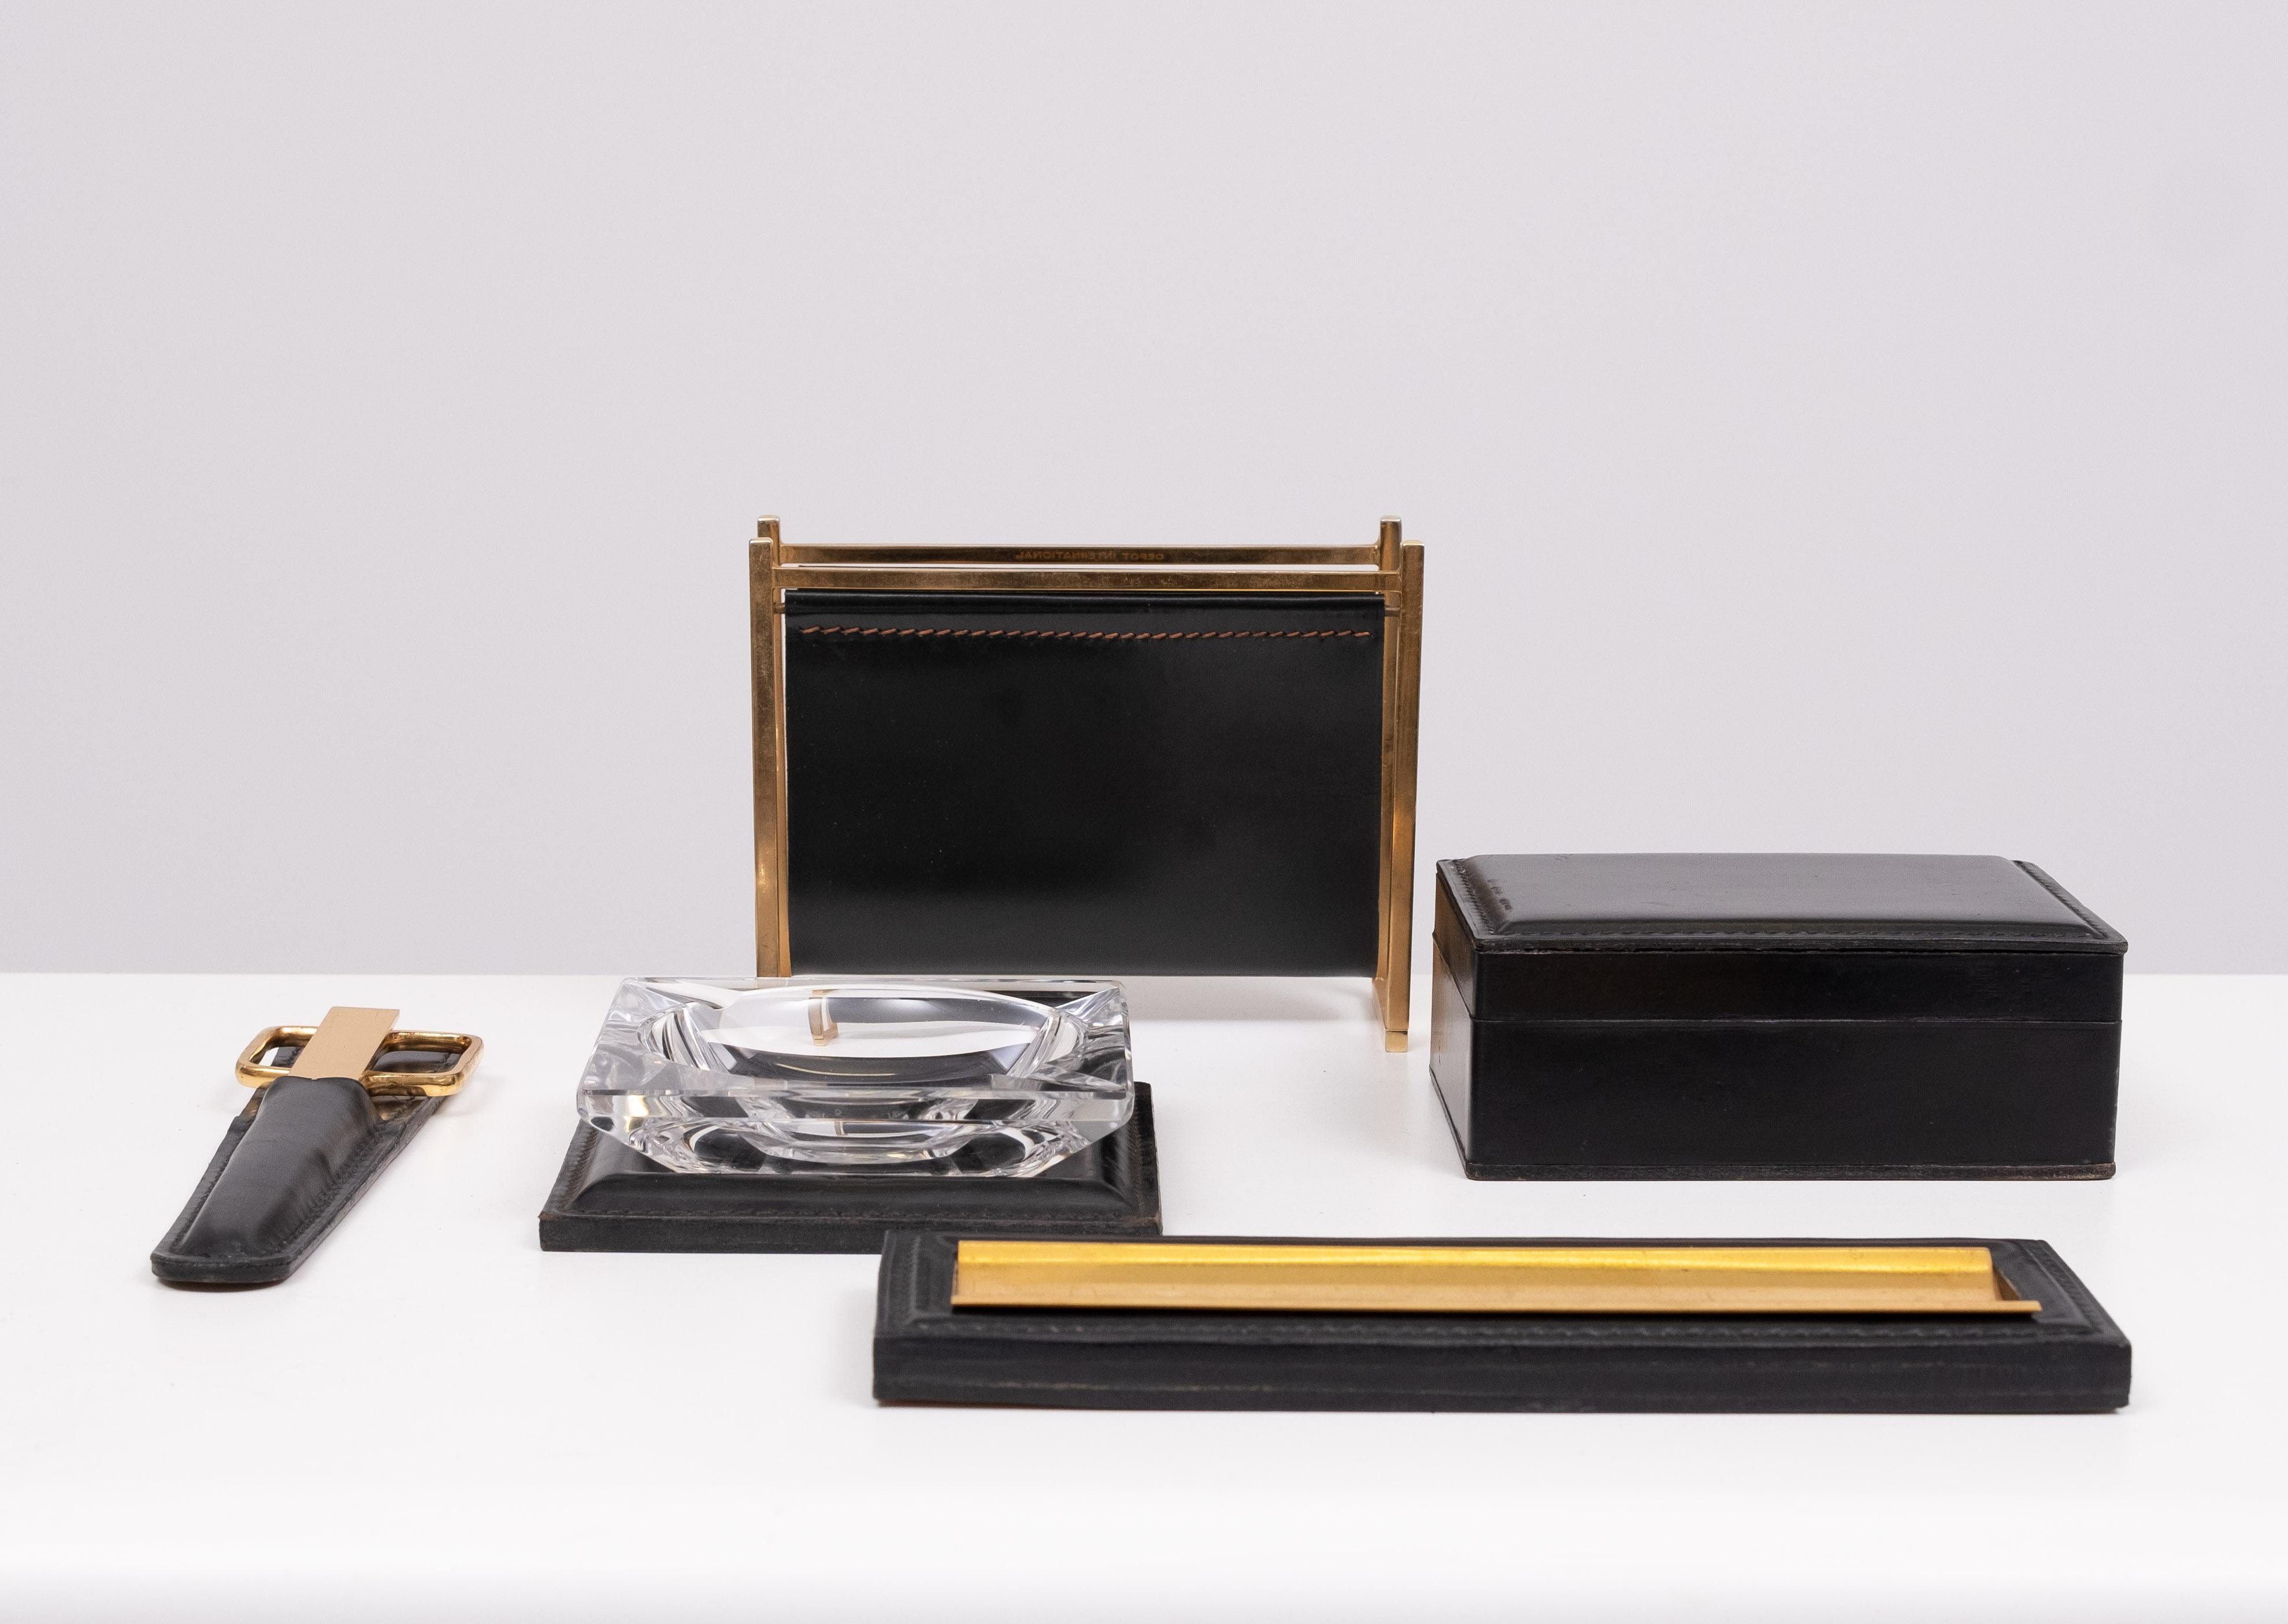 Atemberaubendes Stich Leather 5 piece Desk Set . Schwarze Farbe .
bestehend aus einem Brieföffner und einer Schere in einer schwarzen Lederhülle.
Kleine schwarze Schachtel . Stifthalter, Irrläufer und ein Briefhalter.
Alle signiert von Delvaux